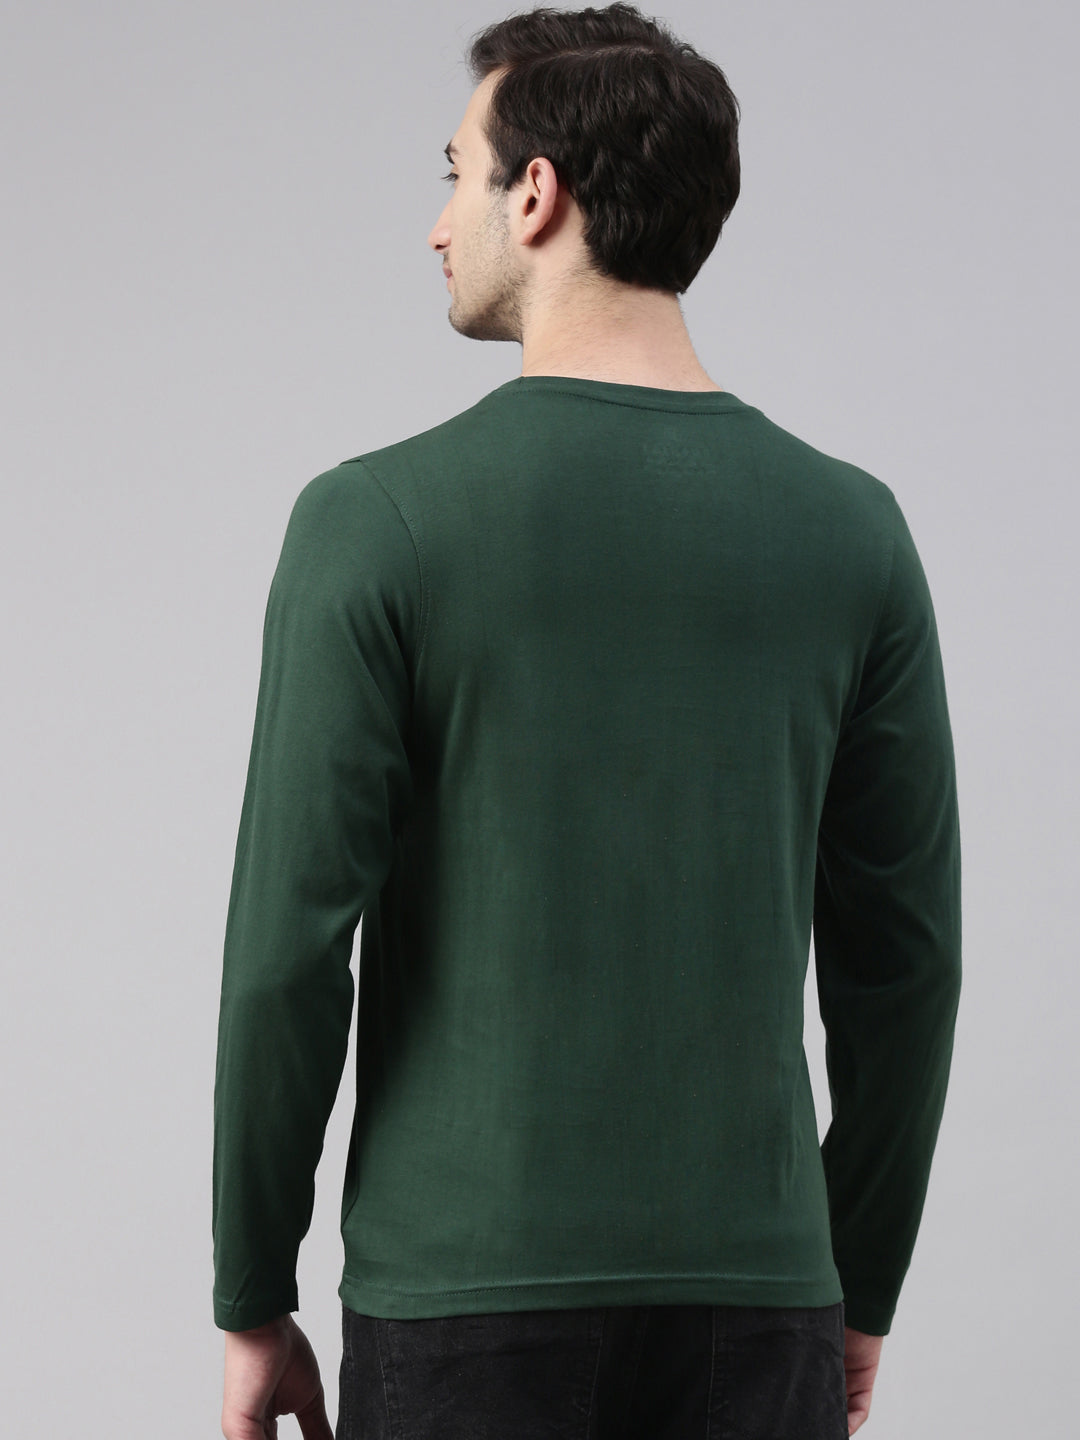 Bottle Green Solid Full Sleeves T-Shirt Full Sleeves Bushirt   